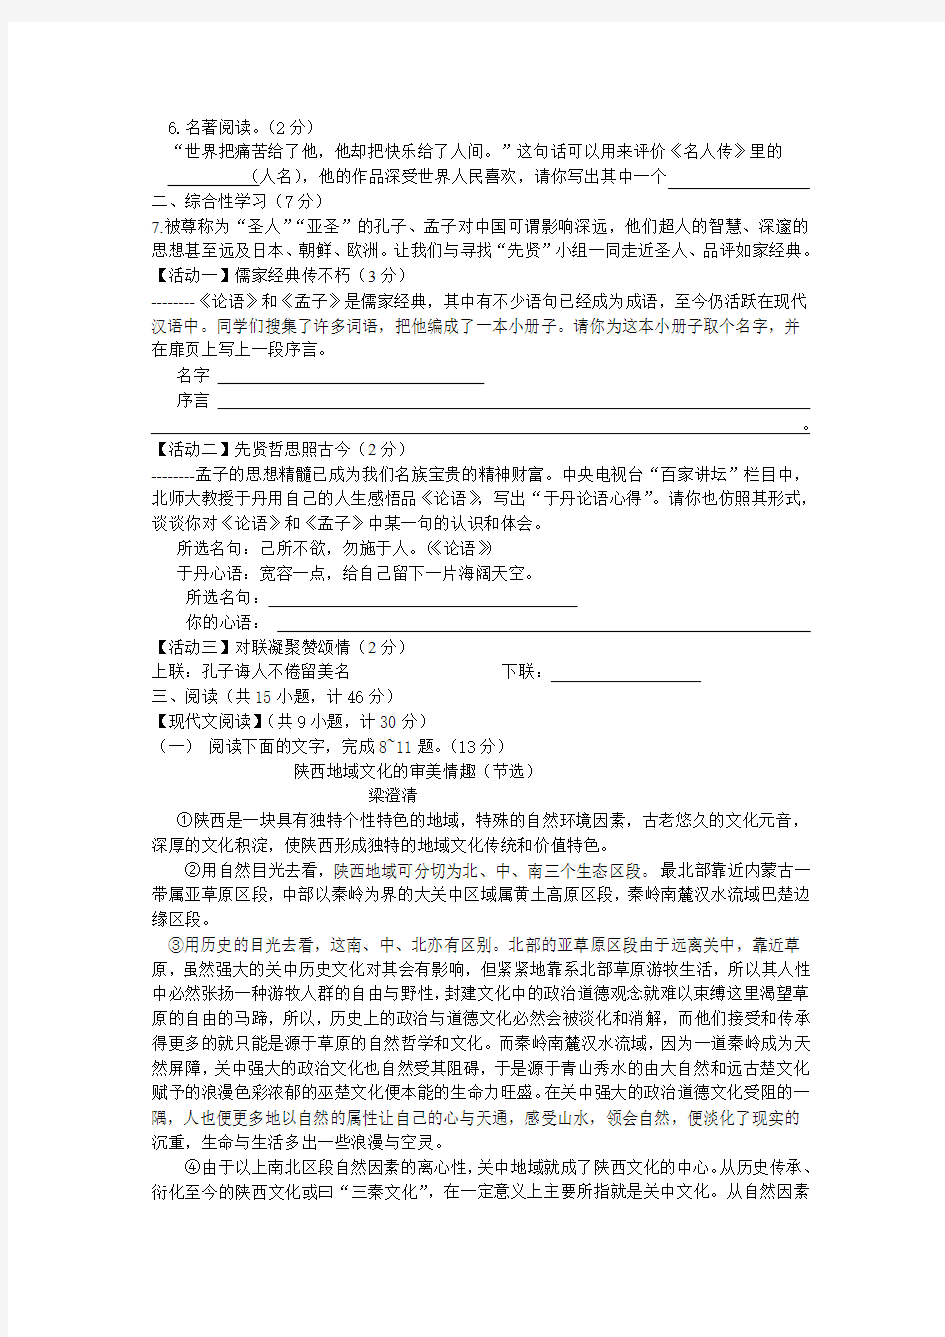 2012年陕西省中考语文模拟试卷(二)